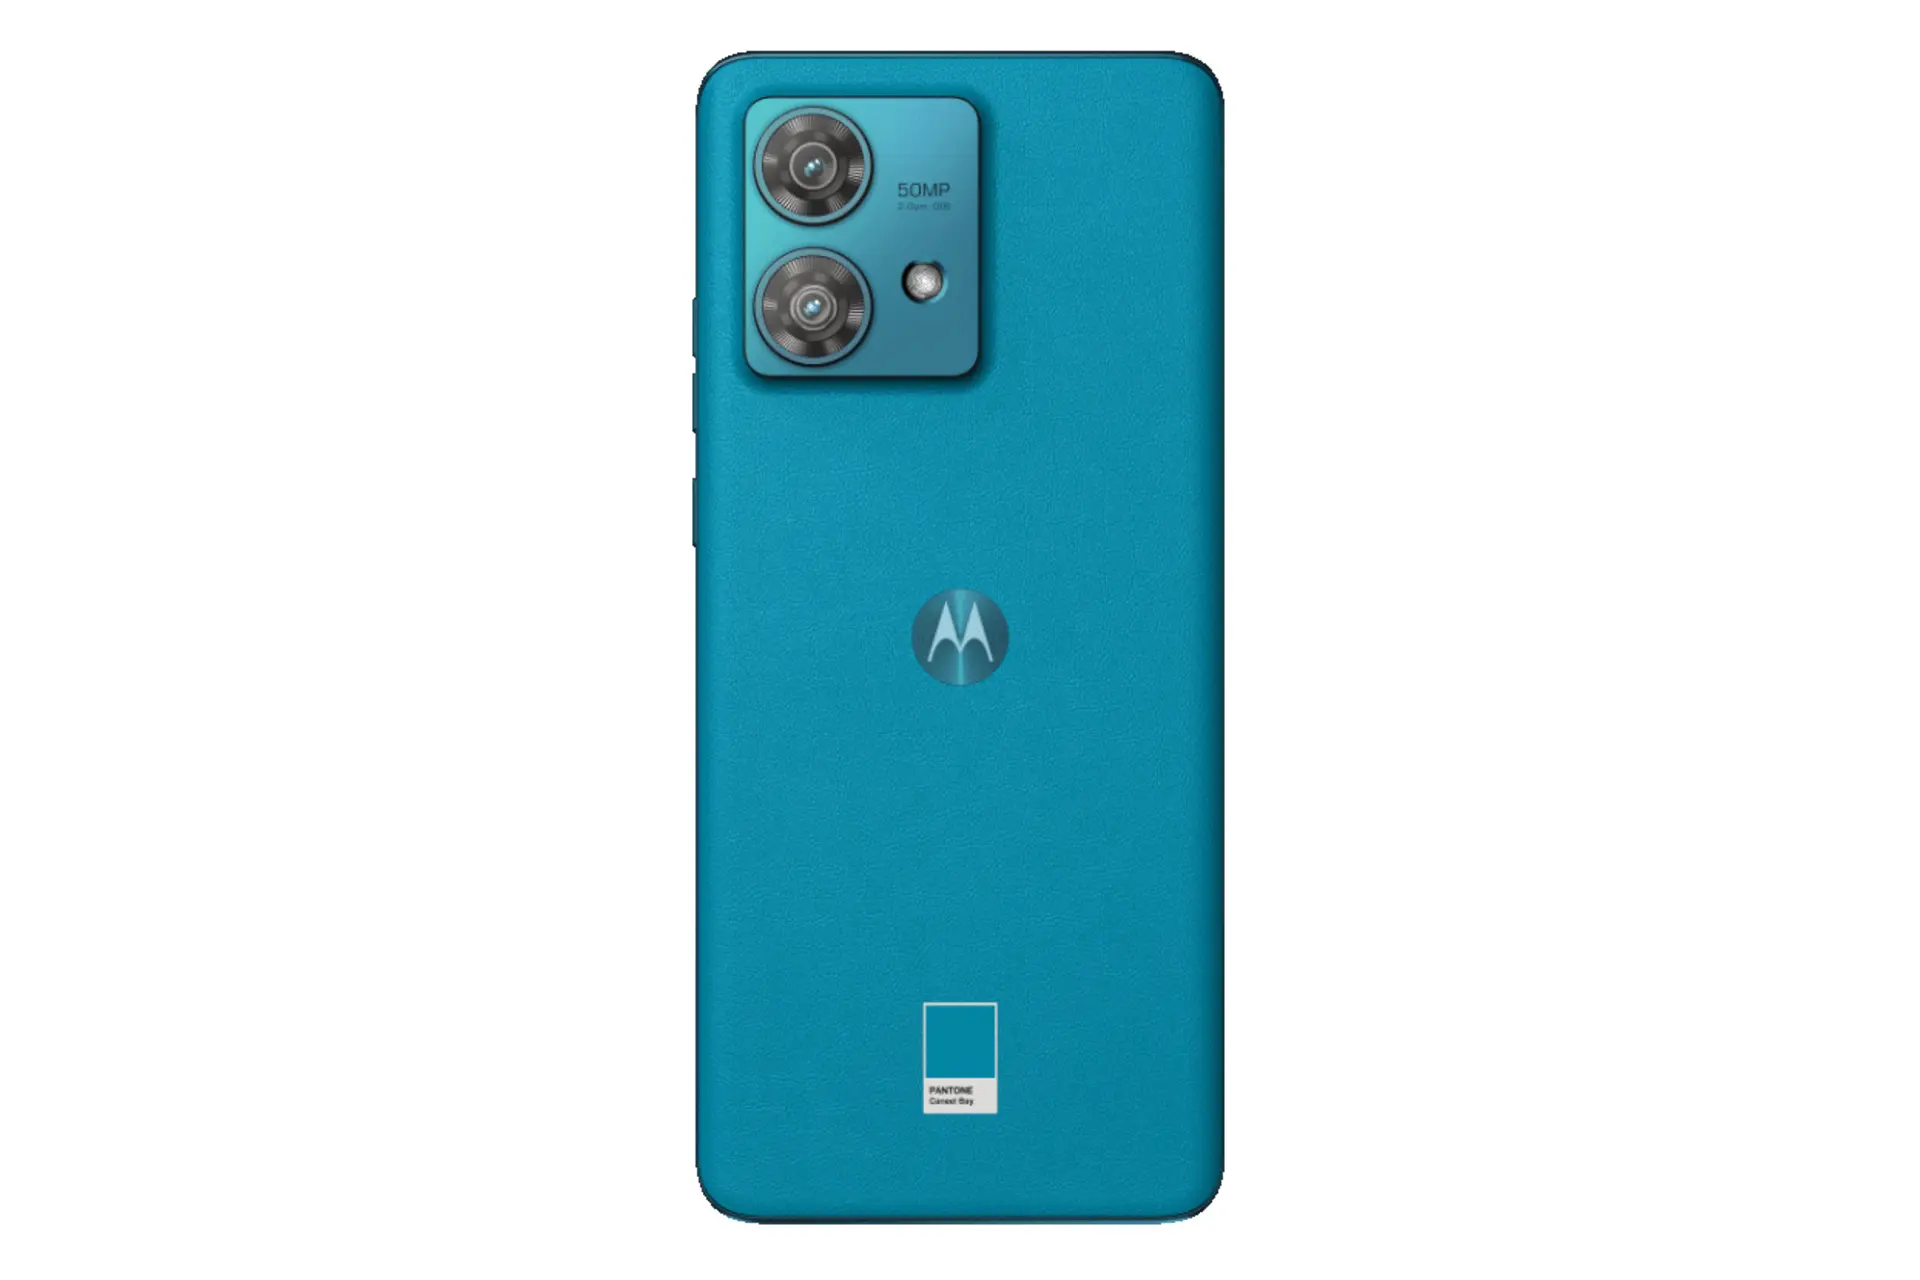 پنل پشت گوشی موبایل موتورولا اج 40 نئو / Motorola Edge 40 Neo آبی